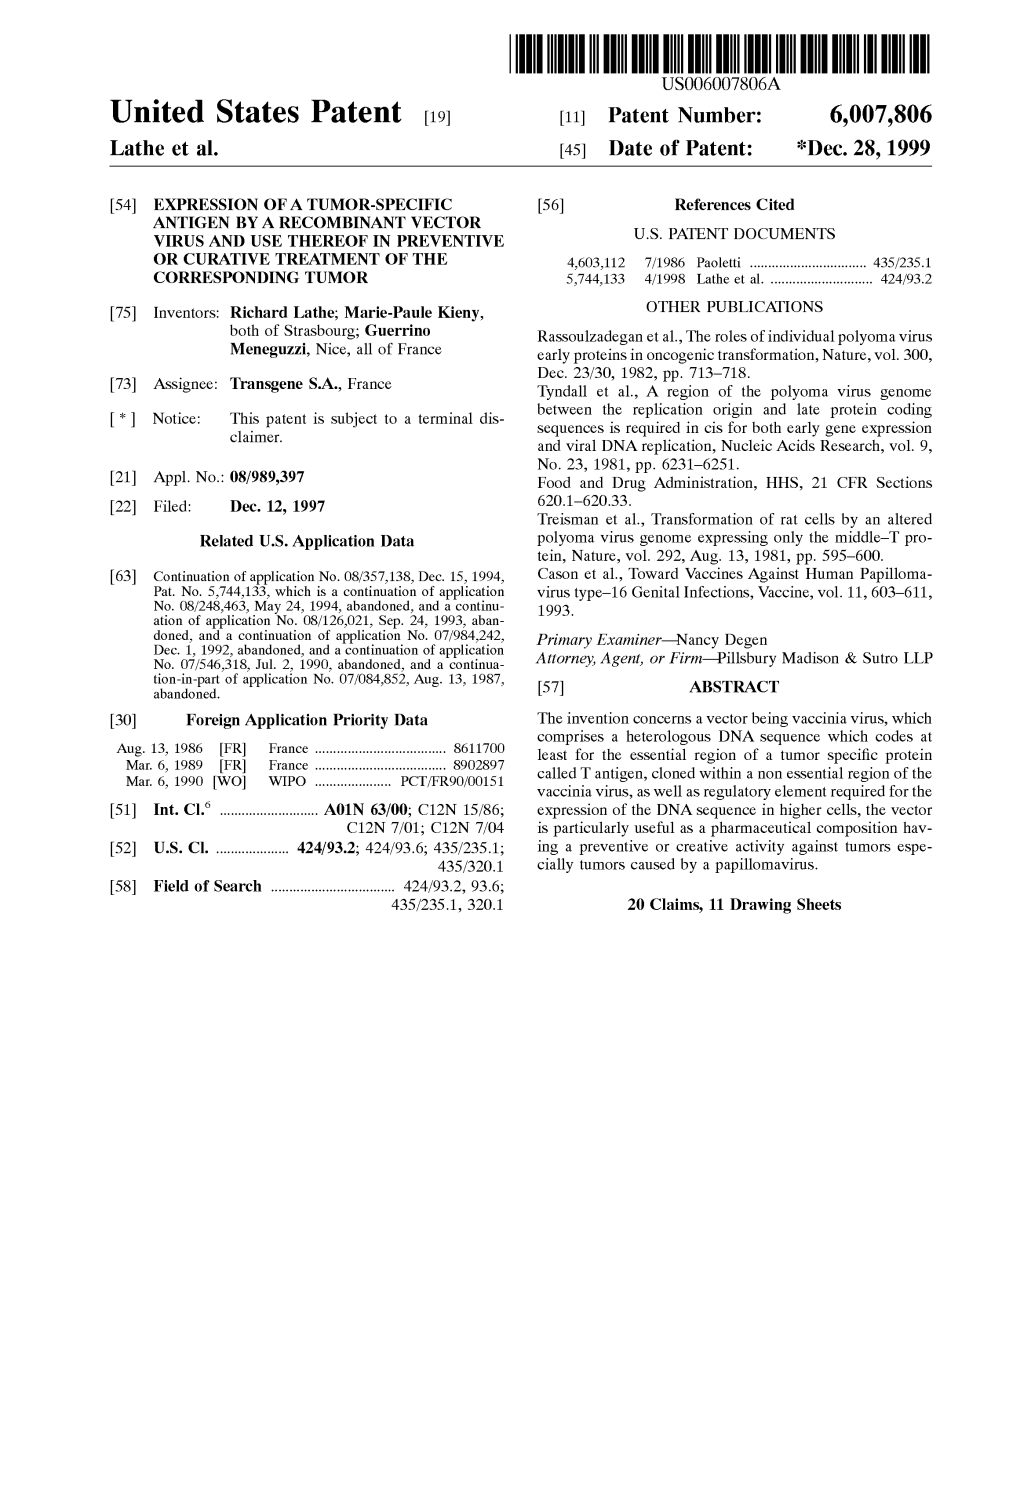 United States Patent (19) 11 Patent Number: 6,007,806 Lathe Et Al